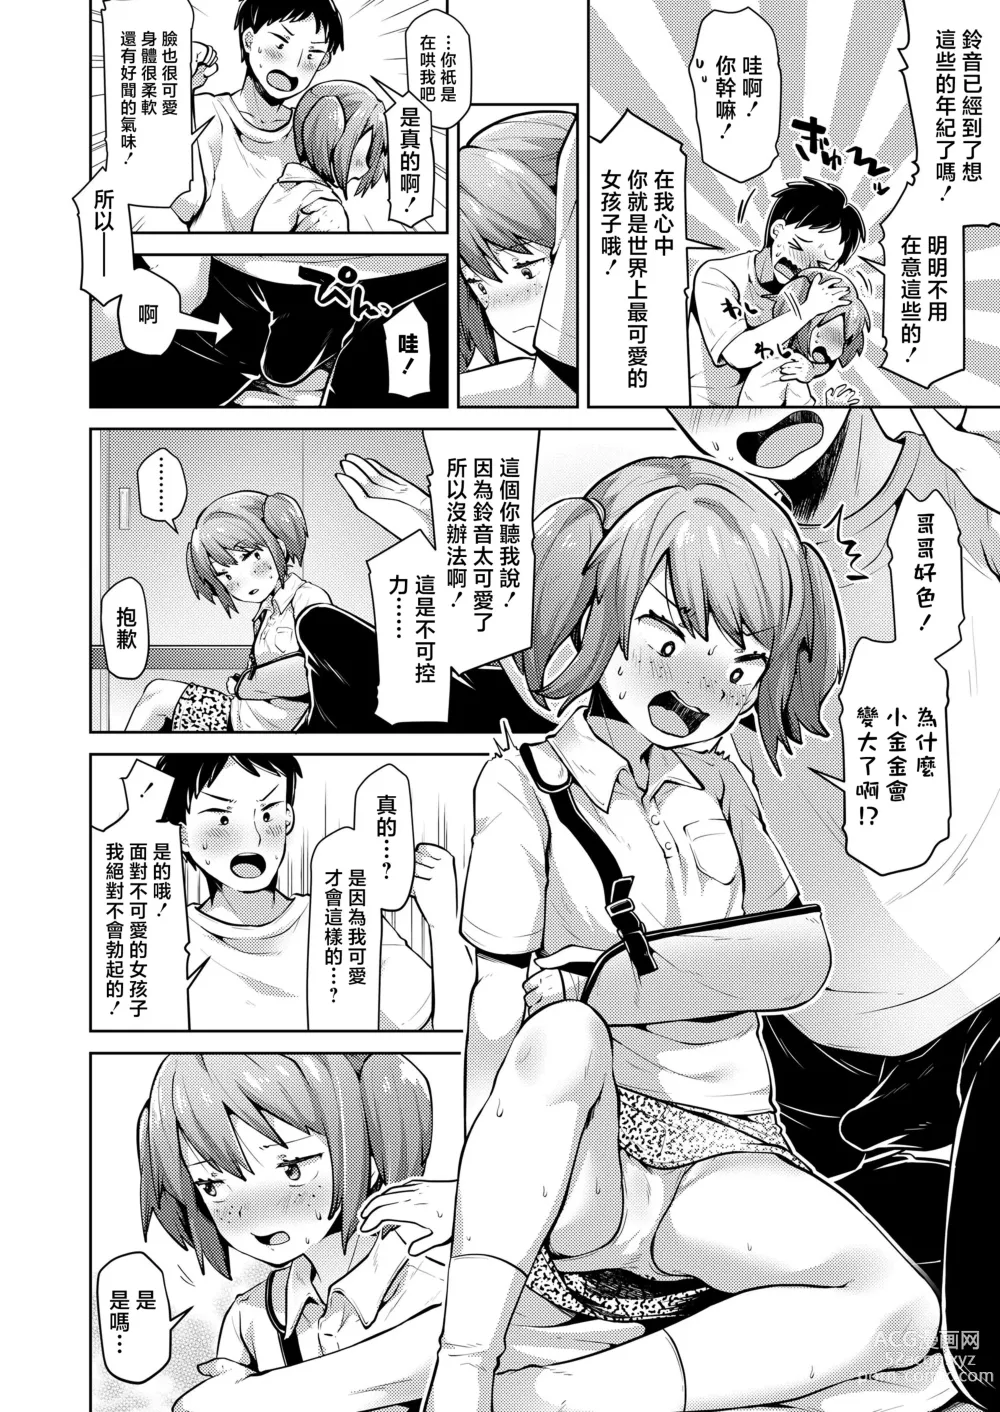 Page 4 of manga Homete Nobasou!